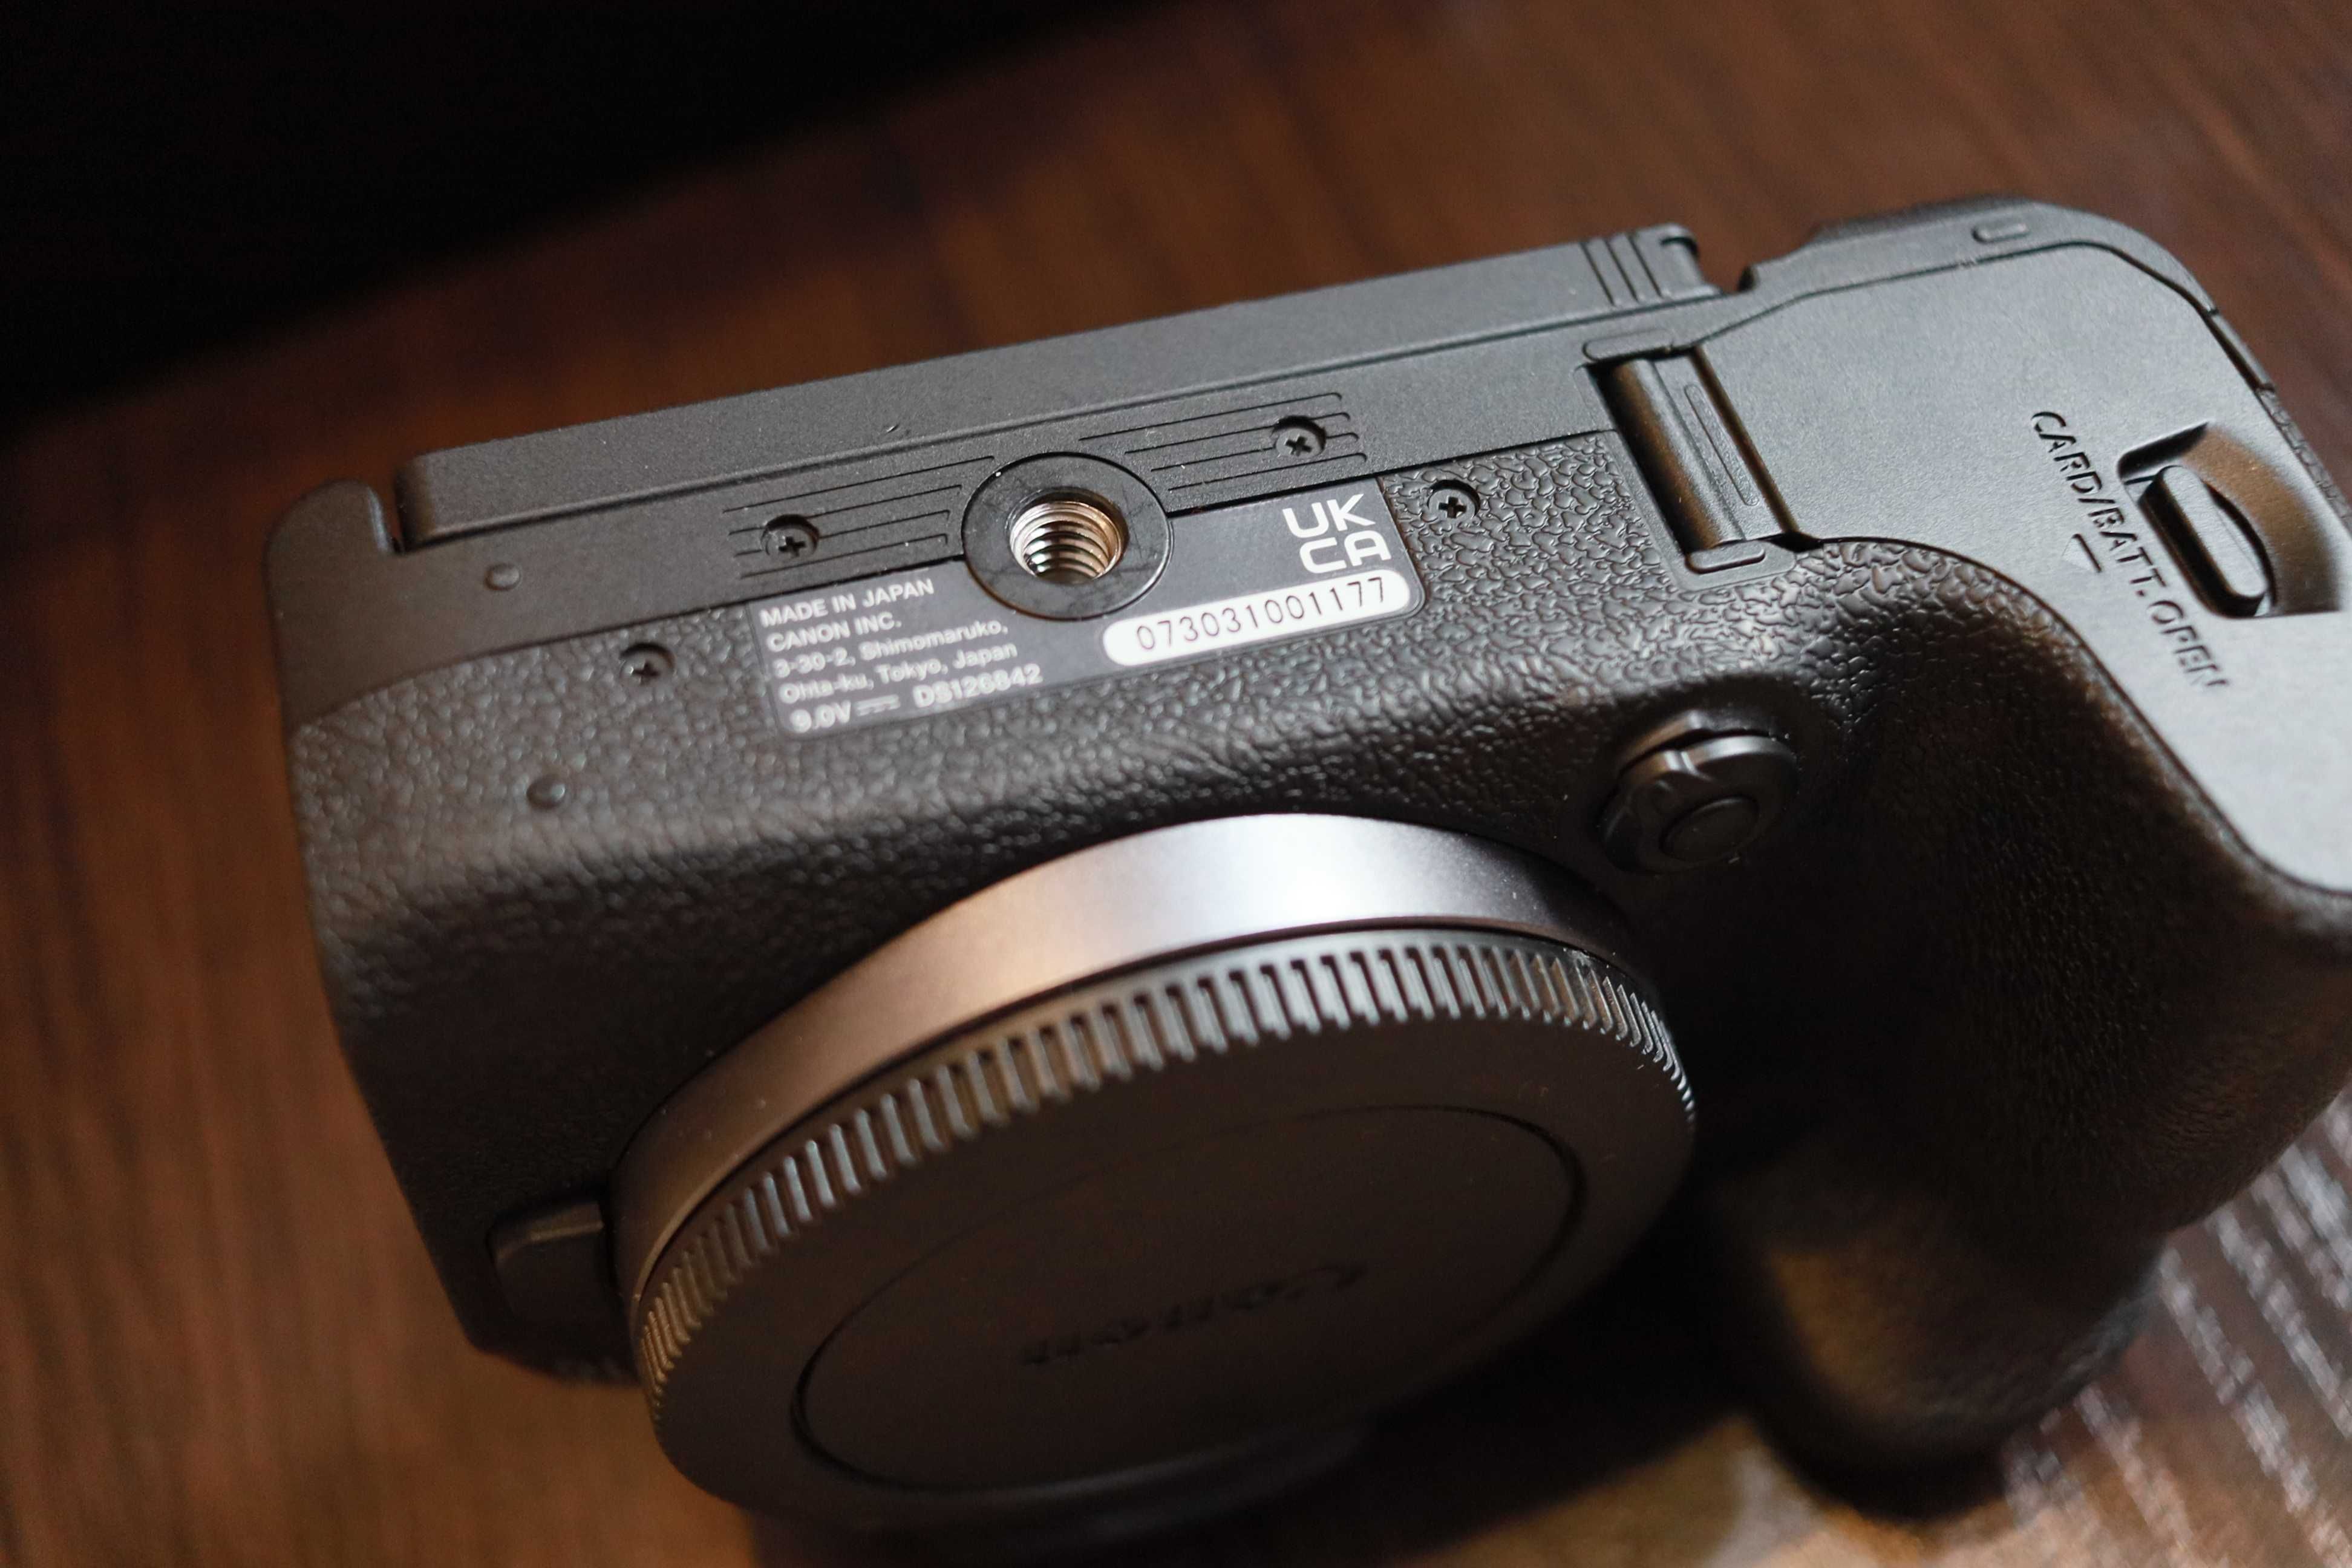 Canon R10 Body, майже нова, 13міс.гарантії, офіційна